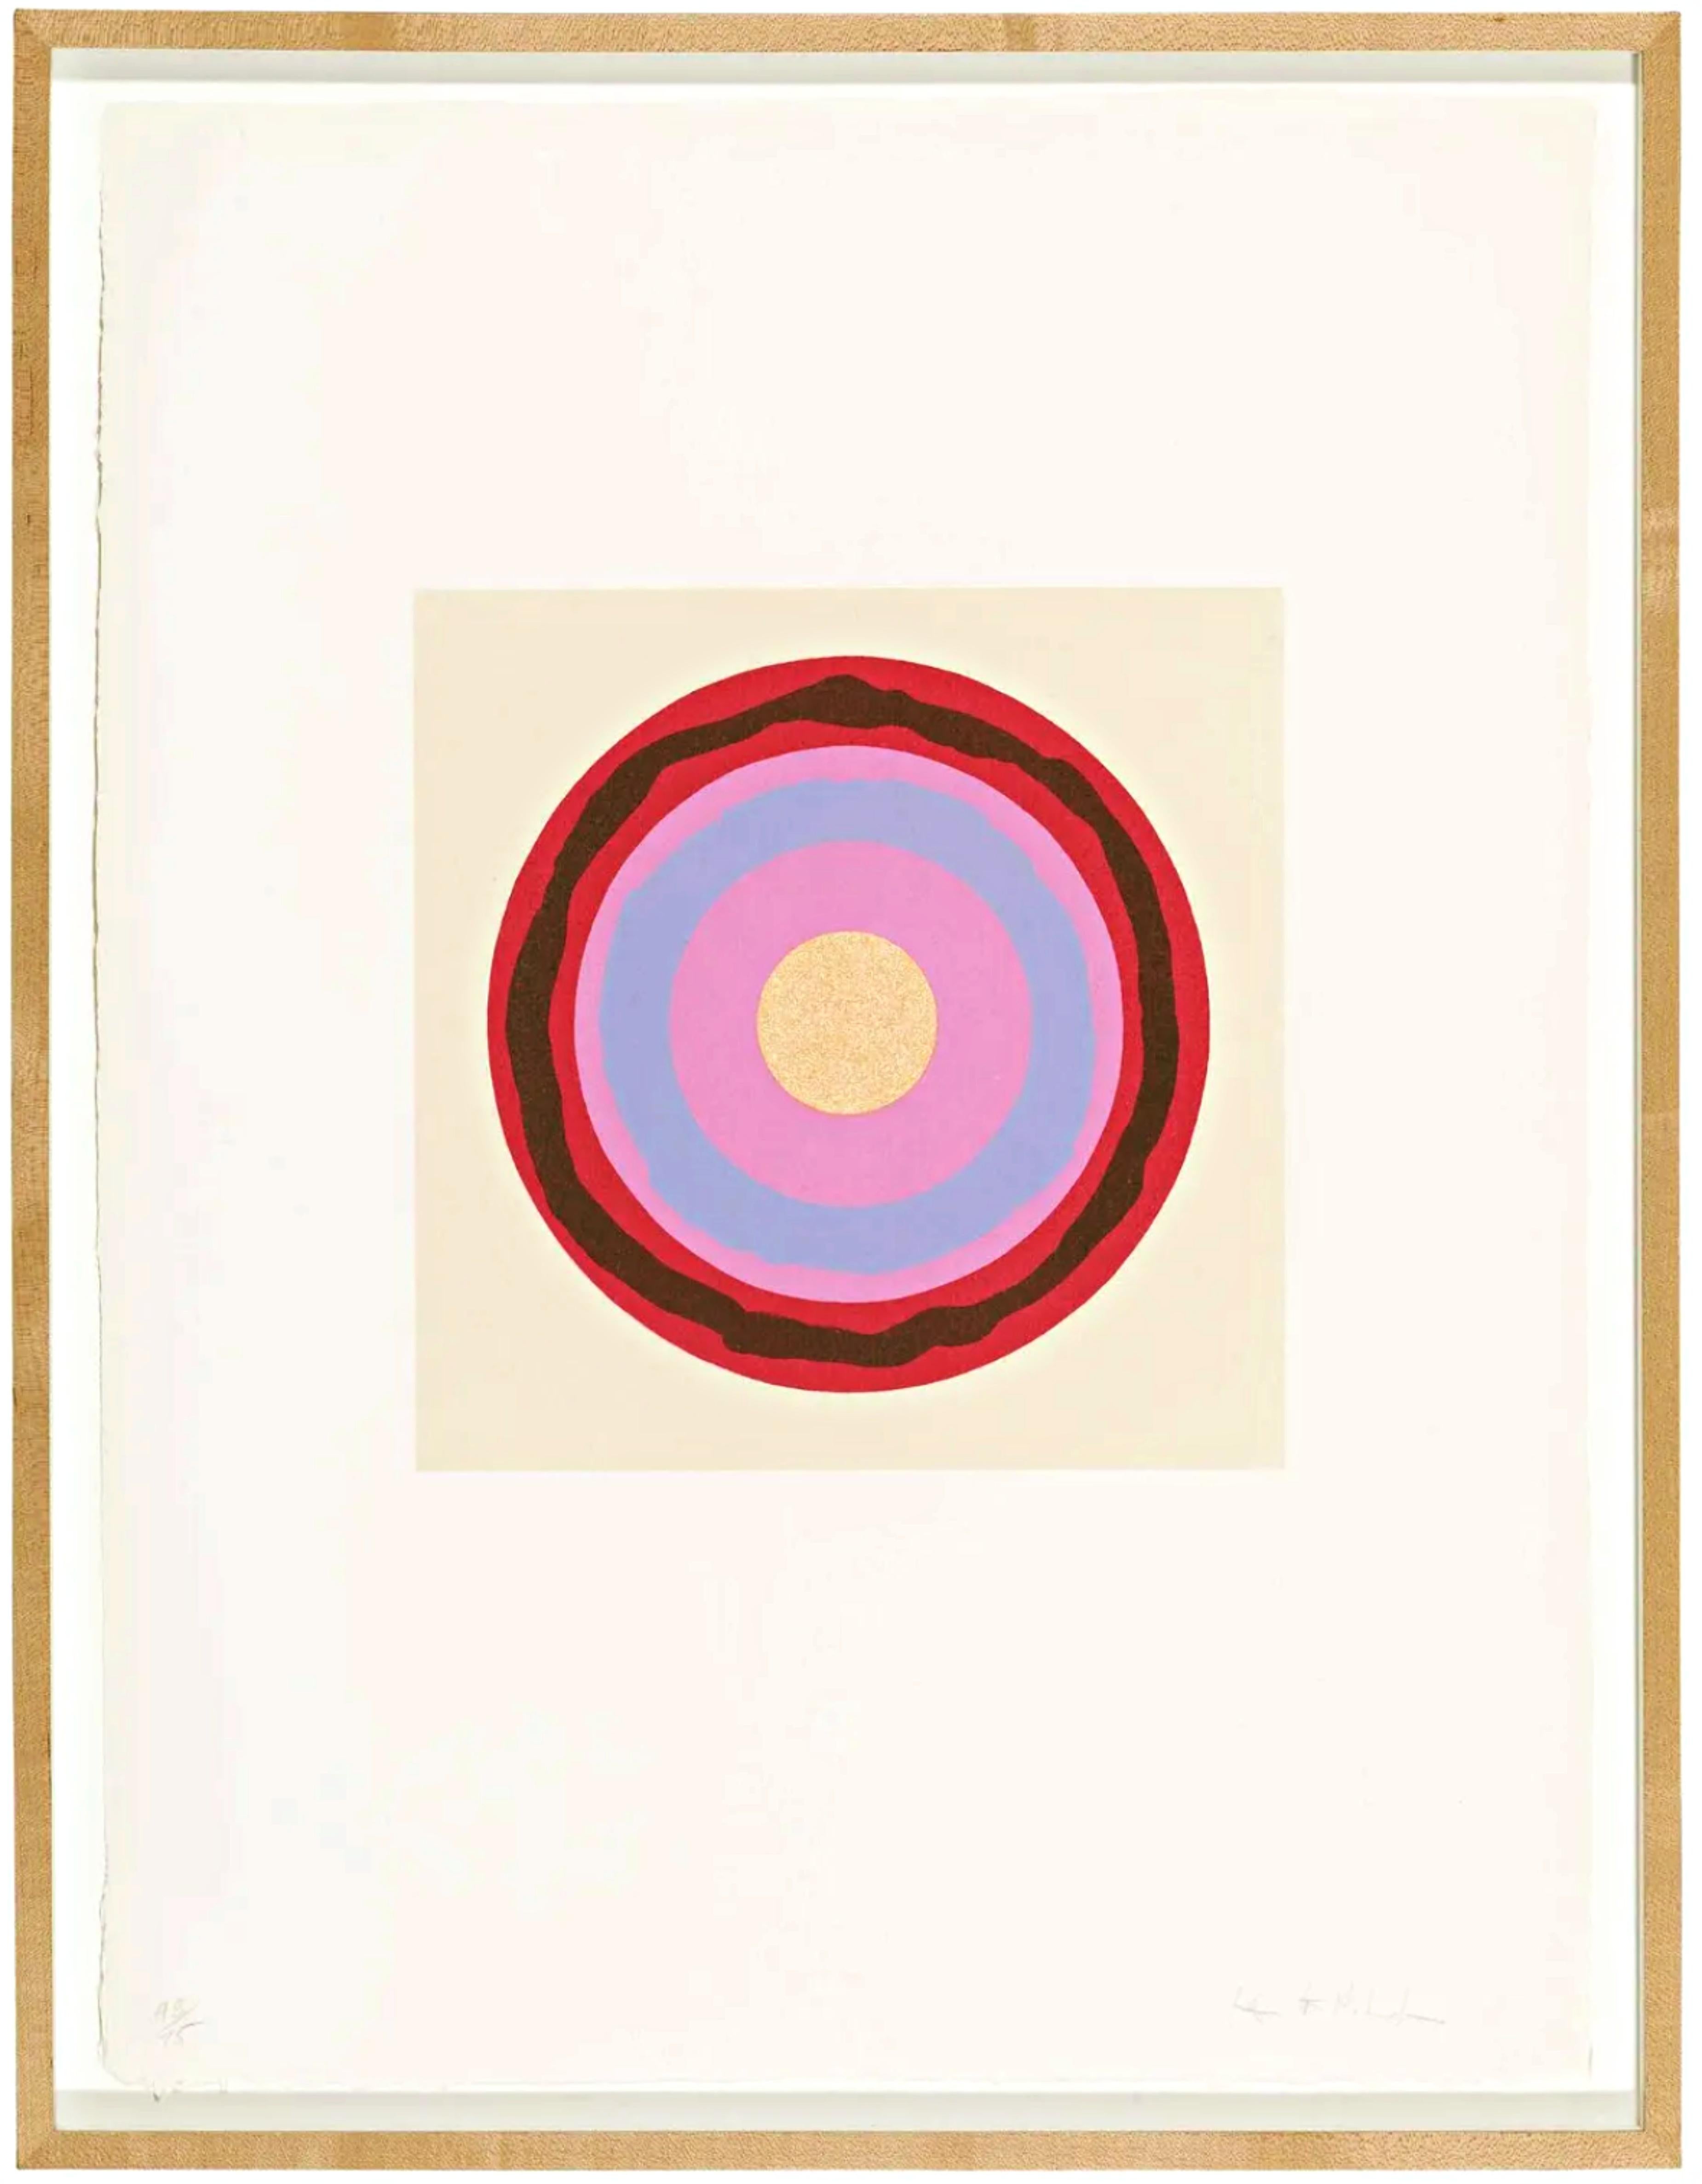 Untitled Target lithographie sur papier fait main de Kenneth Noland, signée, encadrée